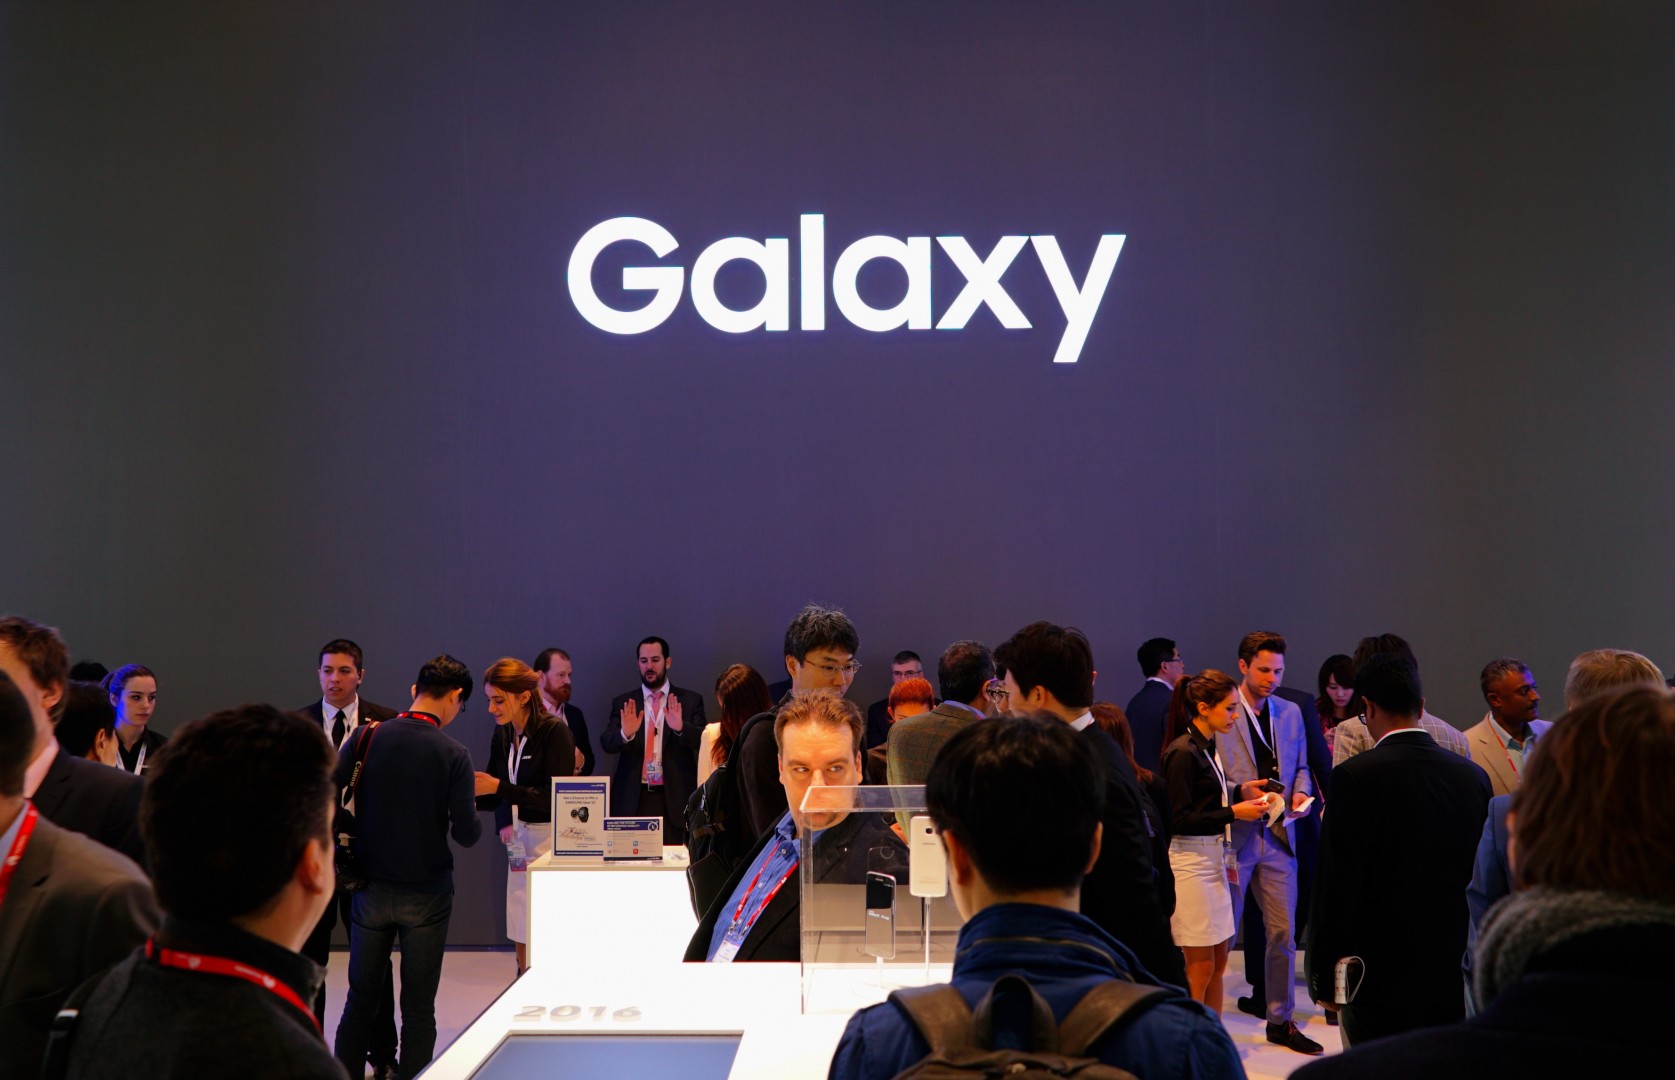 Samsung เริ่มทำแพลนให้เช่าสมาร์ทโฟนใช้ มี S7 และ S7 edge นำร่อง